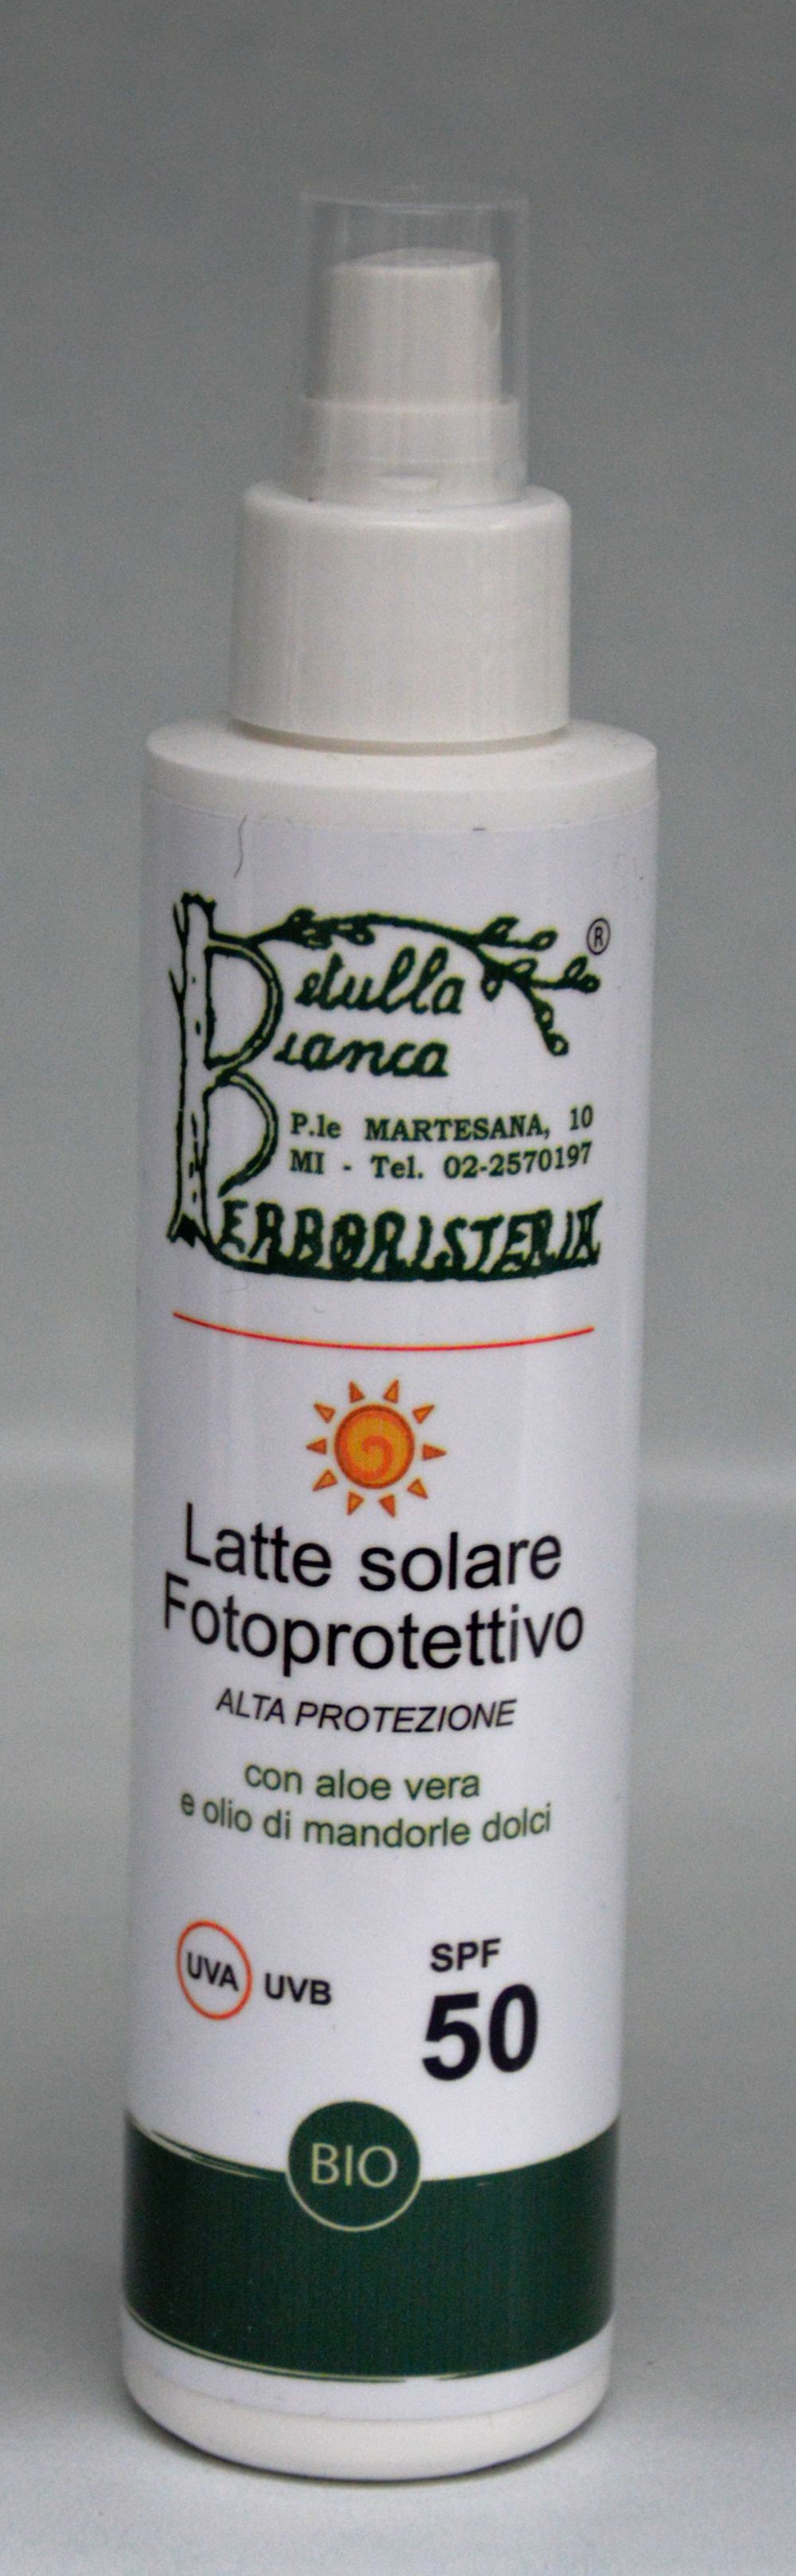 Latte solare spray fotoprotettivo alta protezione spf 50